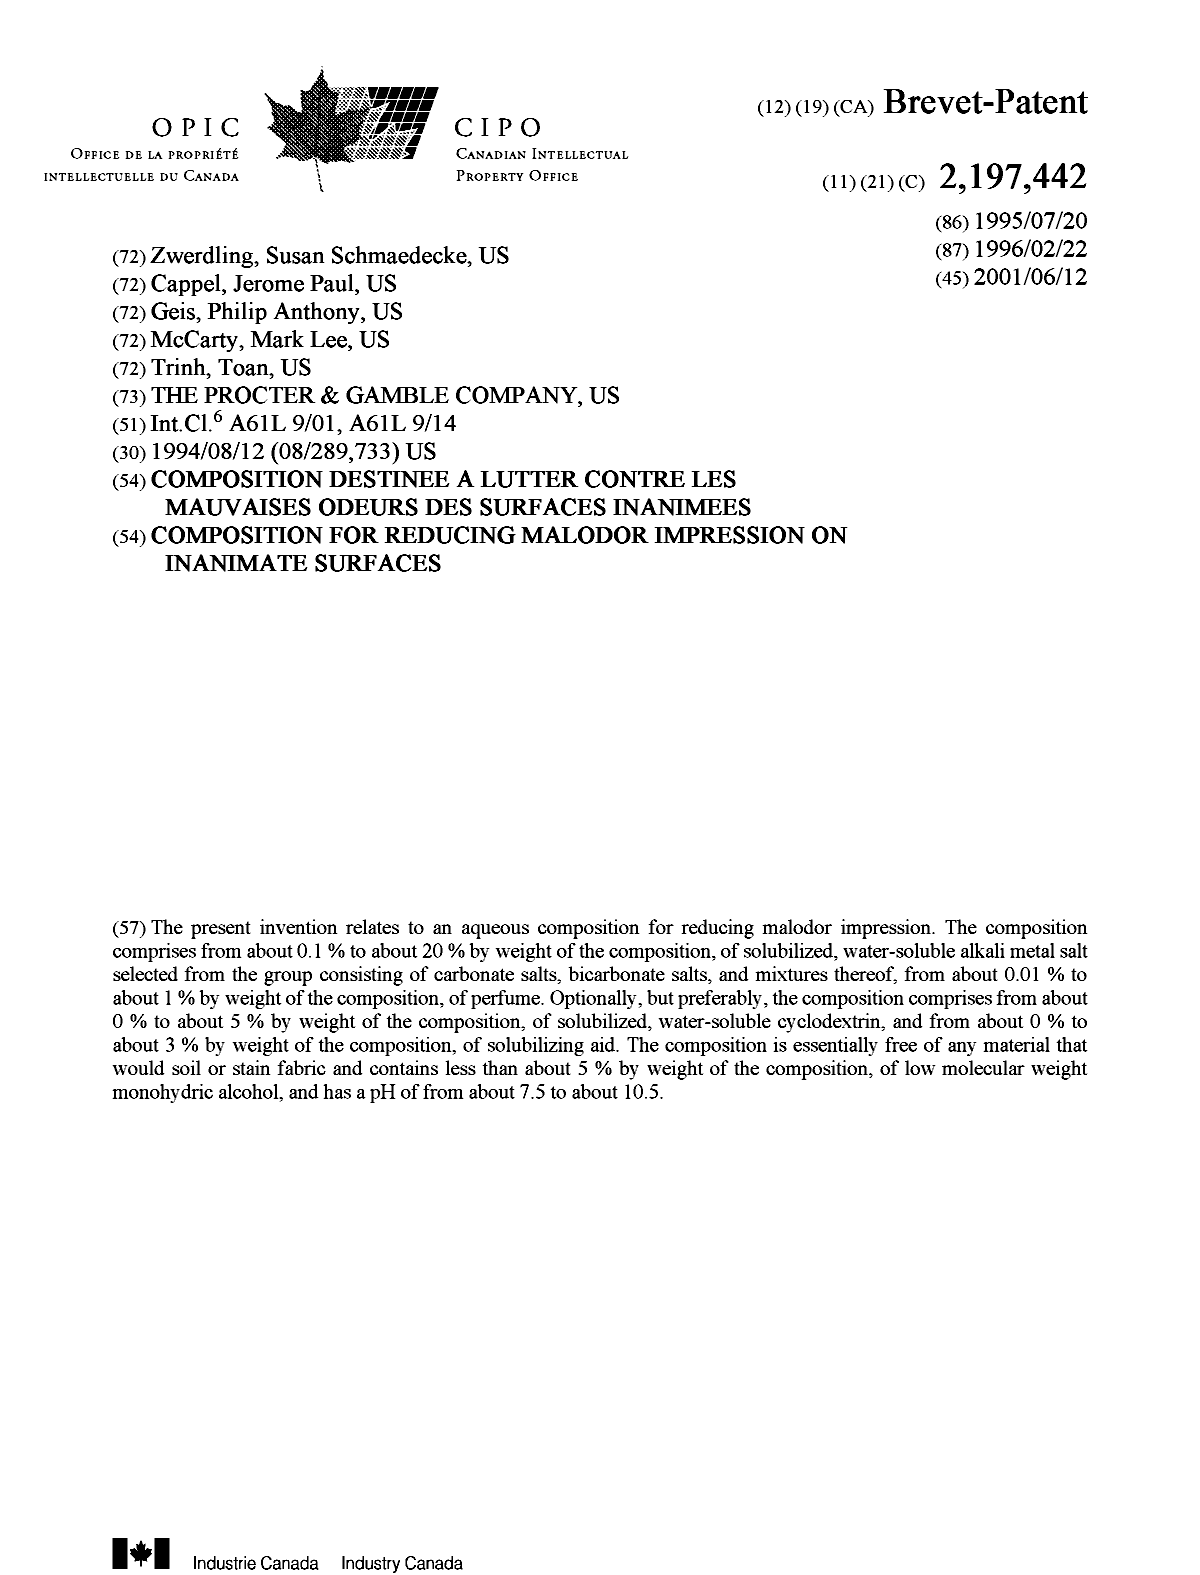 Document de brevet canadien 2197442. Page couverture 20010514. Image 1 de 1